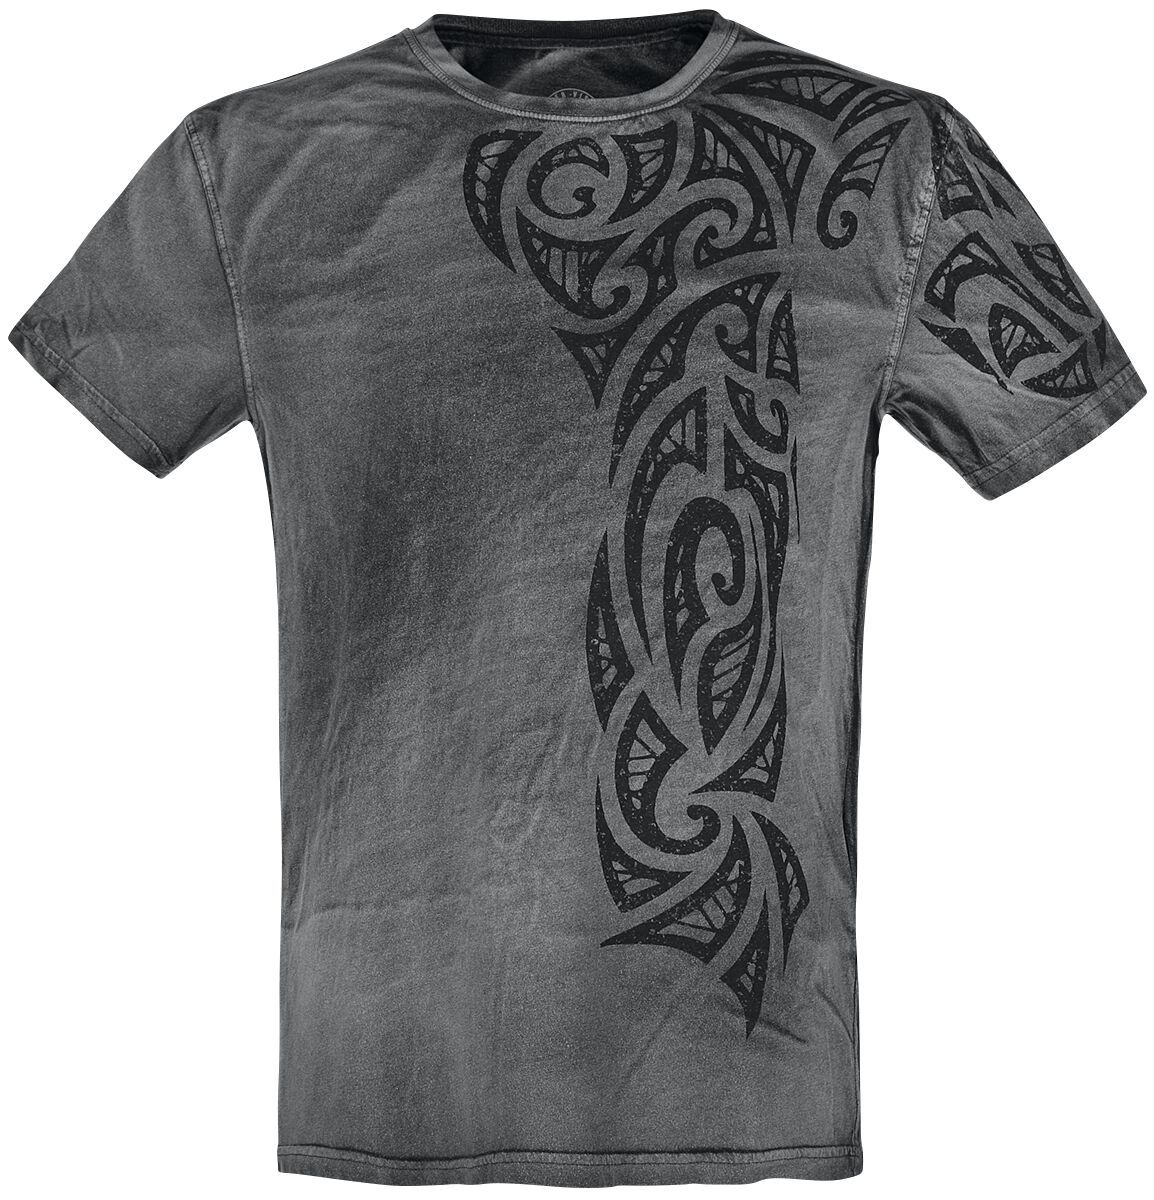 Outer Vision T-Shirt - Gothic Tattoo - S bis 4XL - für Männer - Größe L - grau